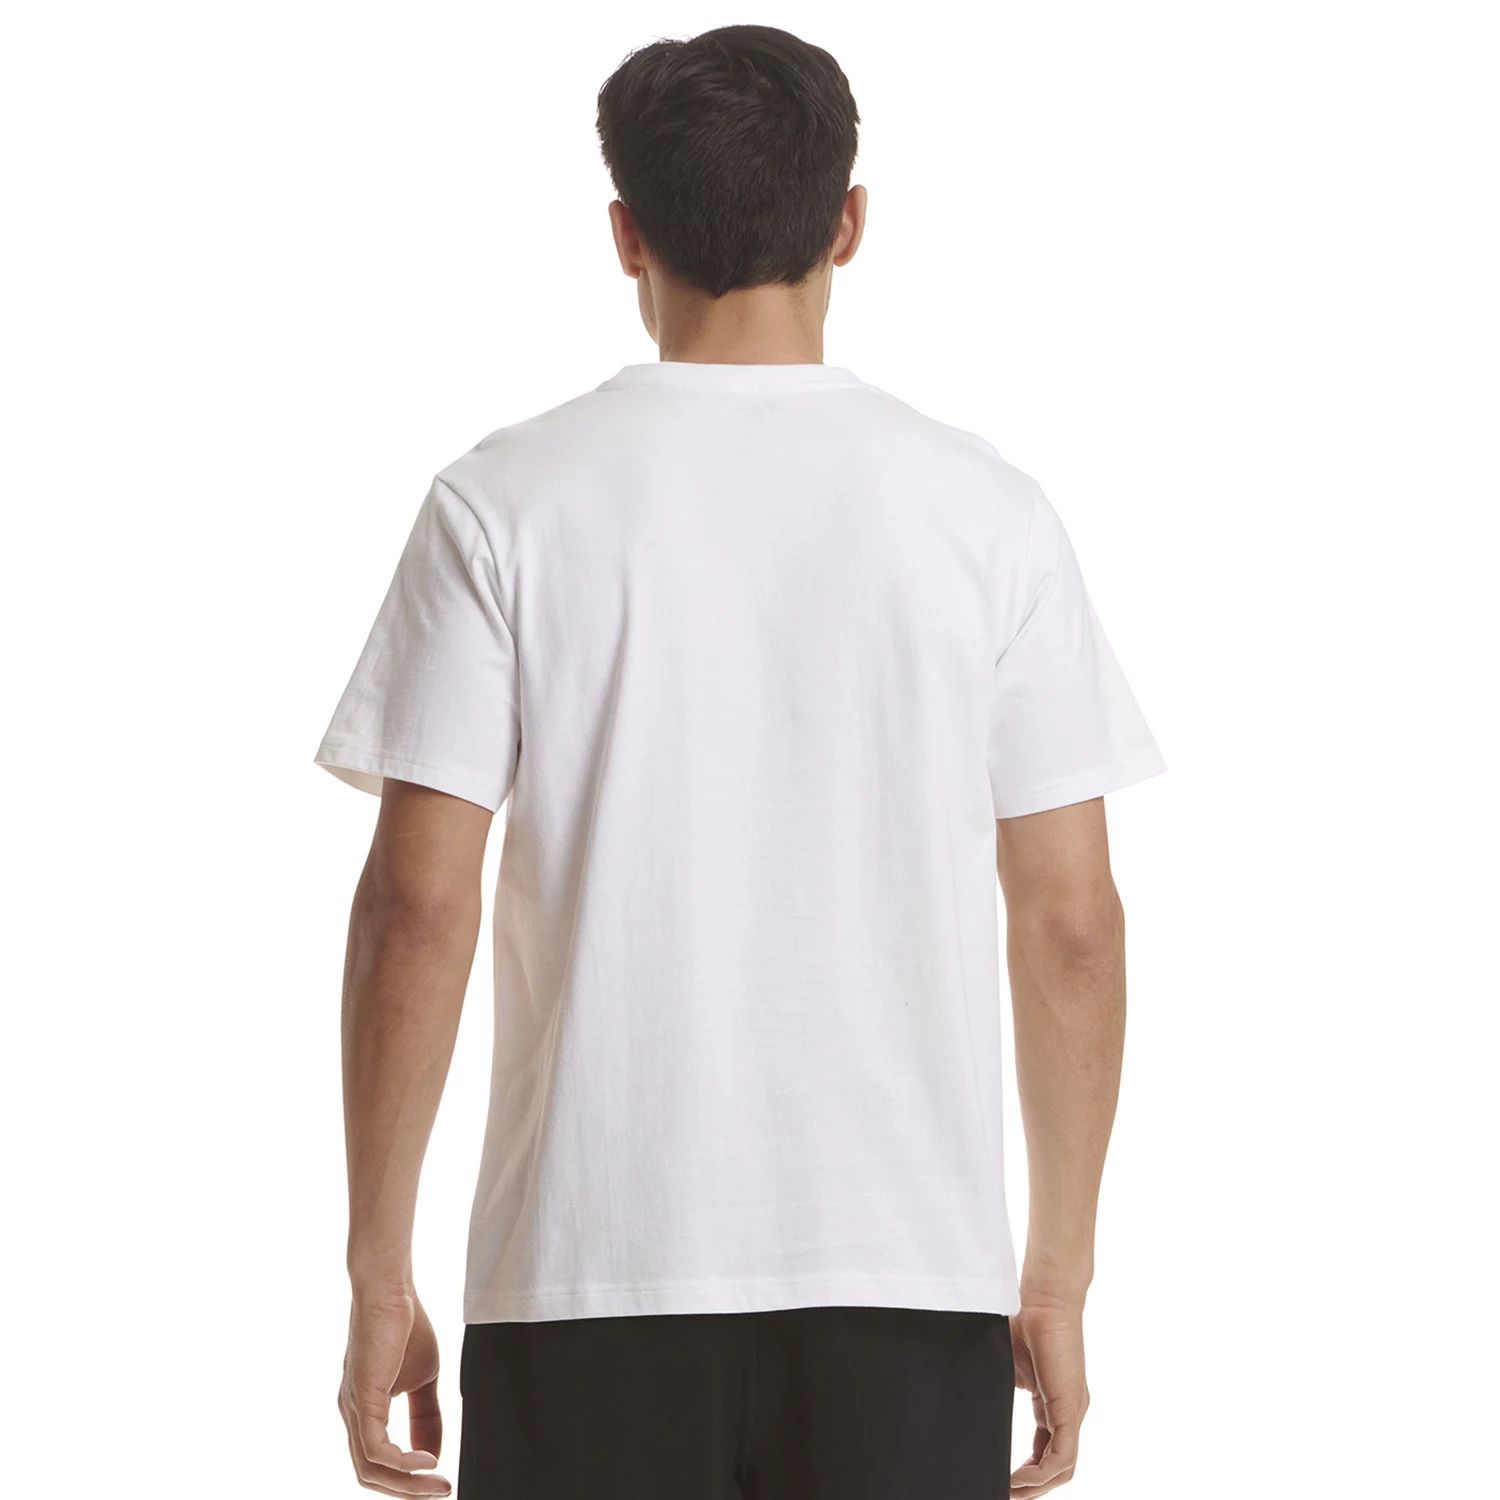 Мужская футболка с разрезом и логотипом Spalding